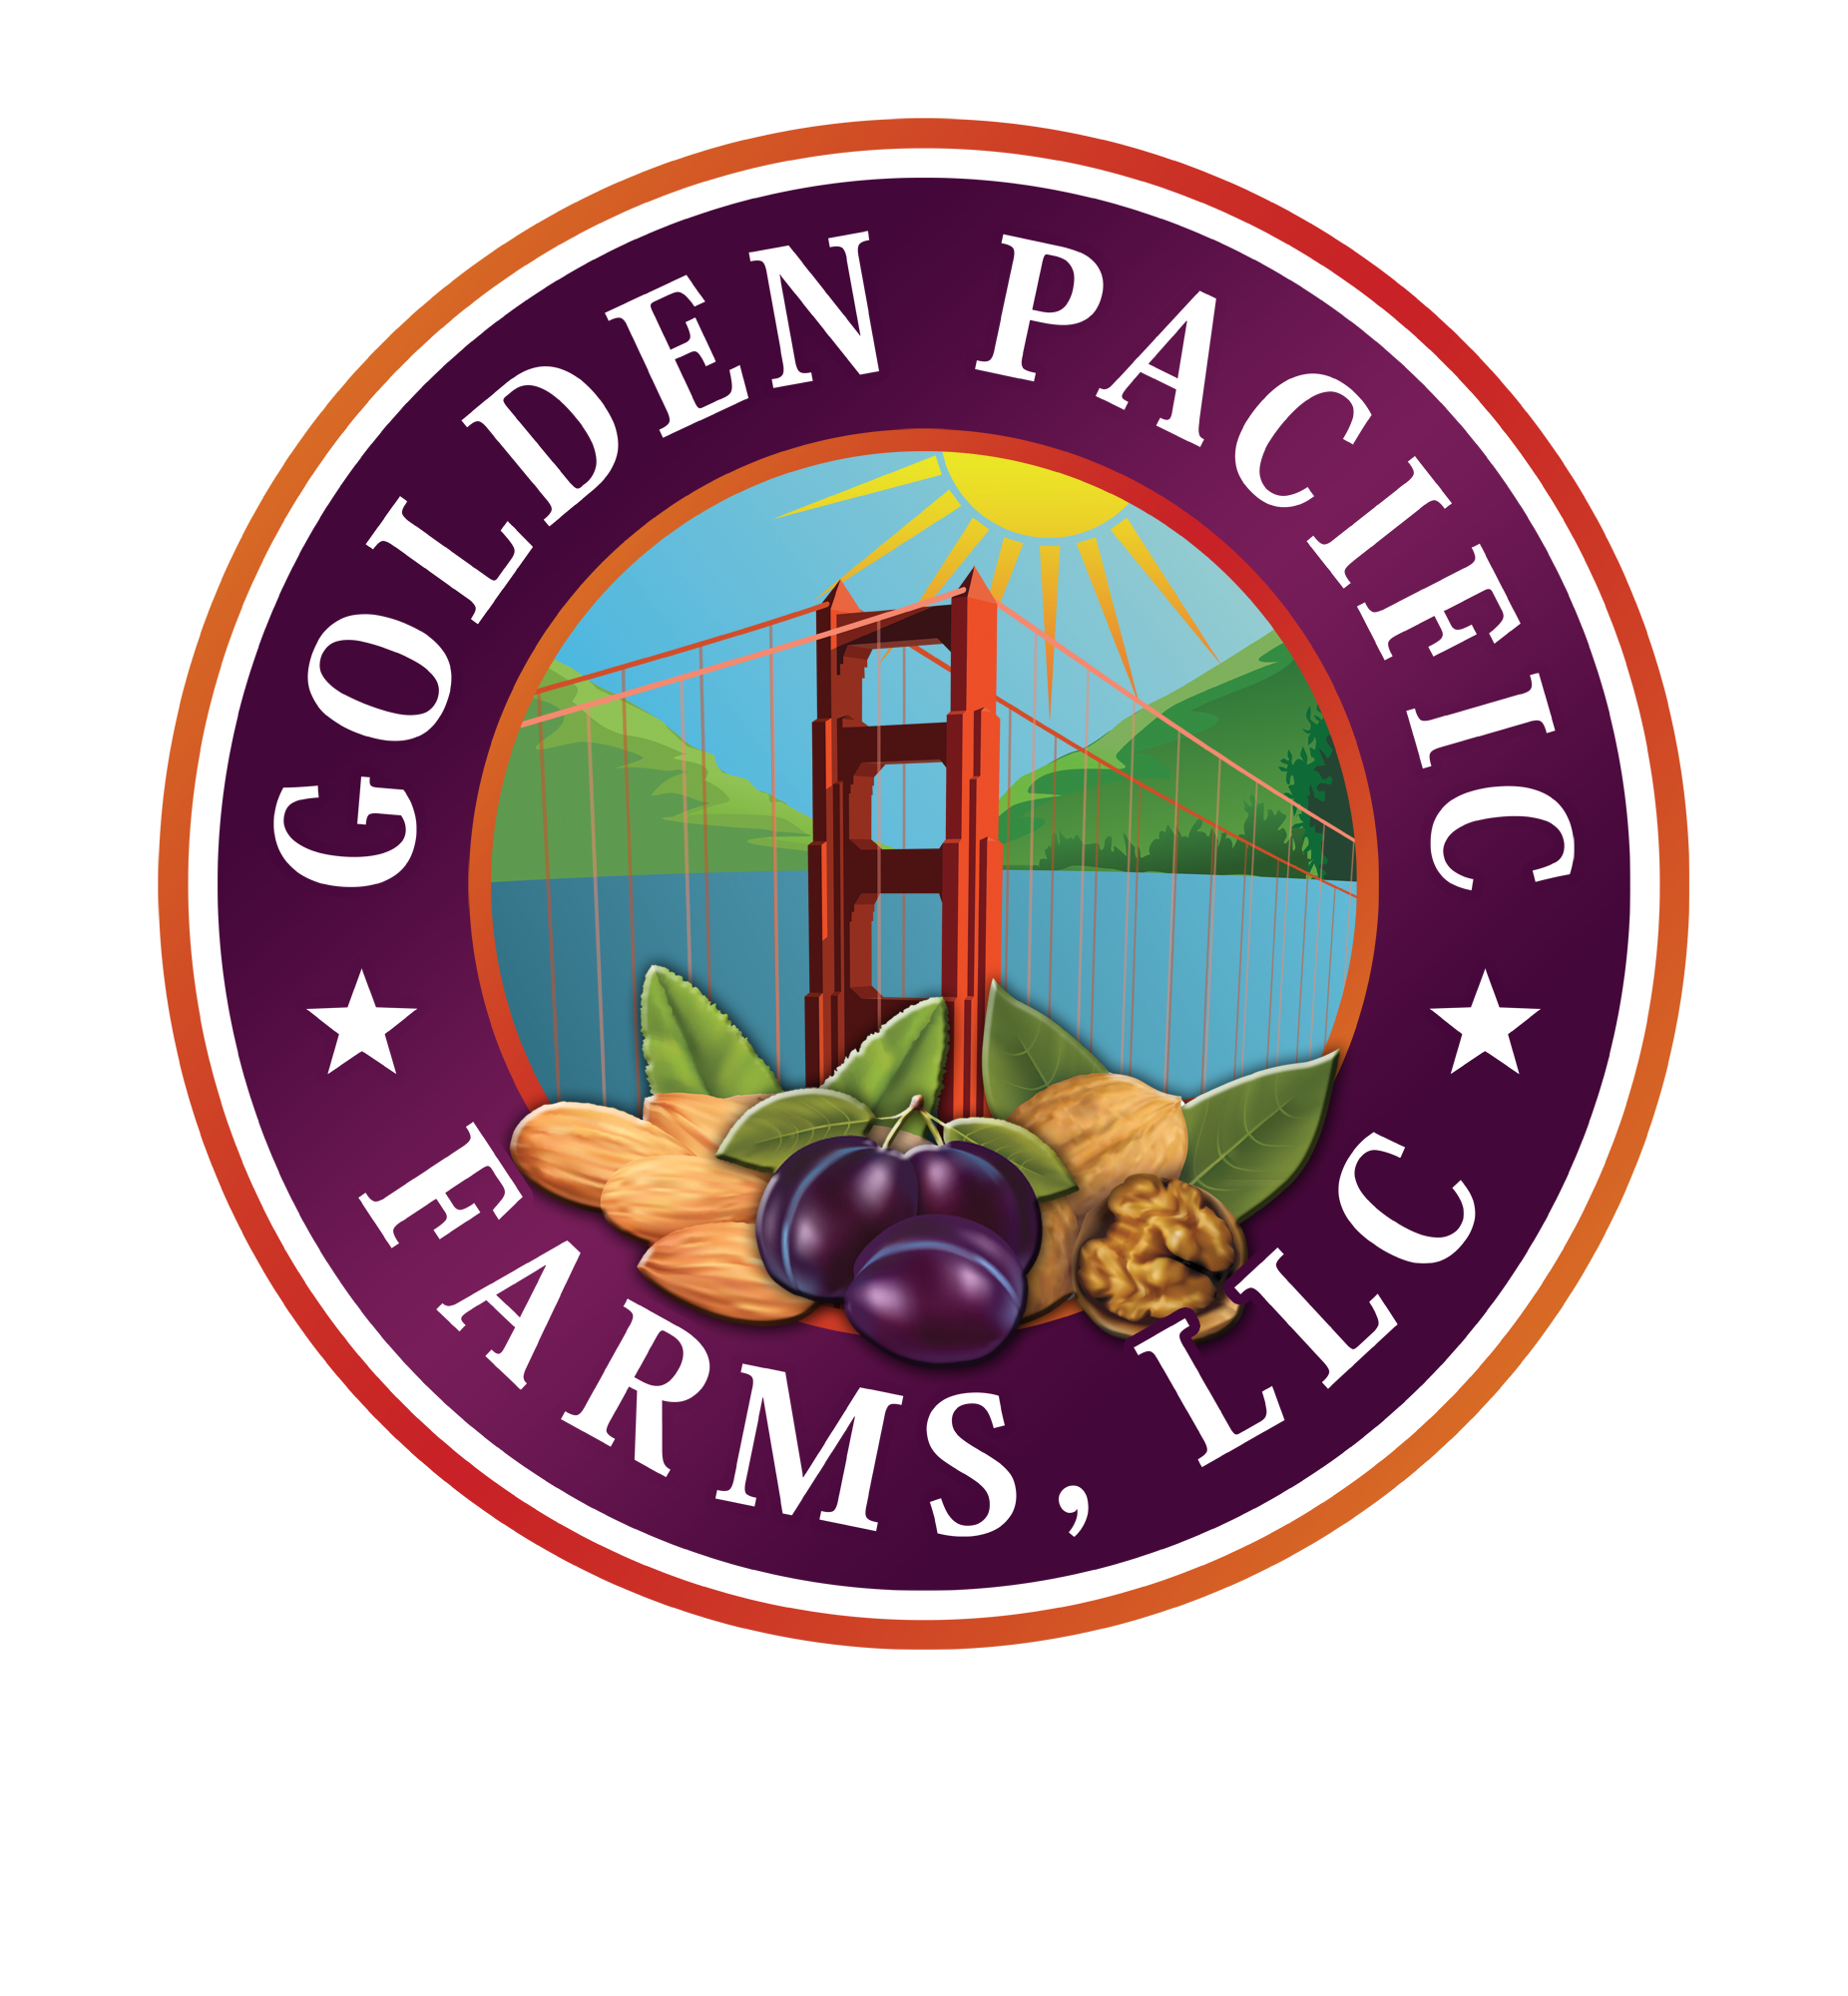 golden star farms union grove nc